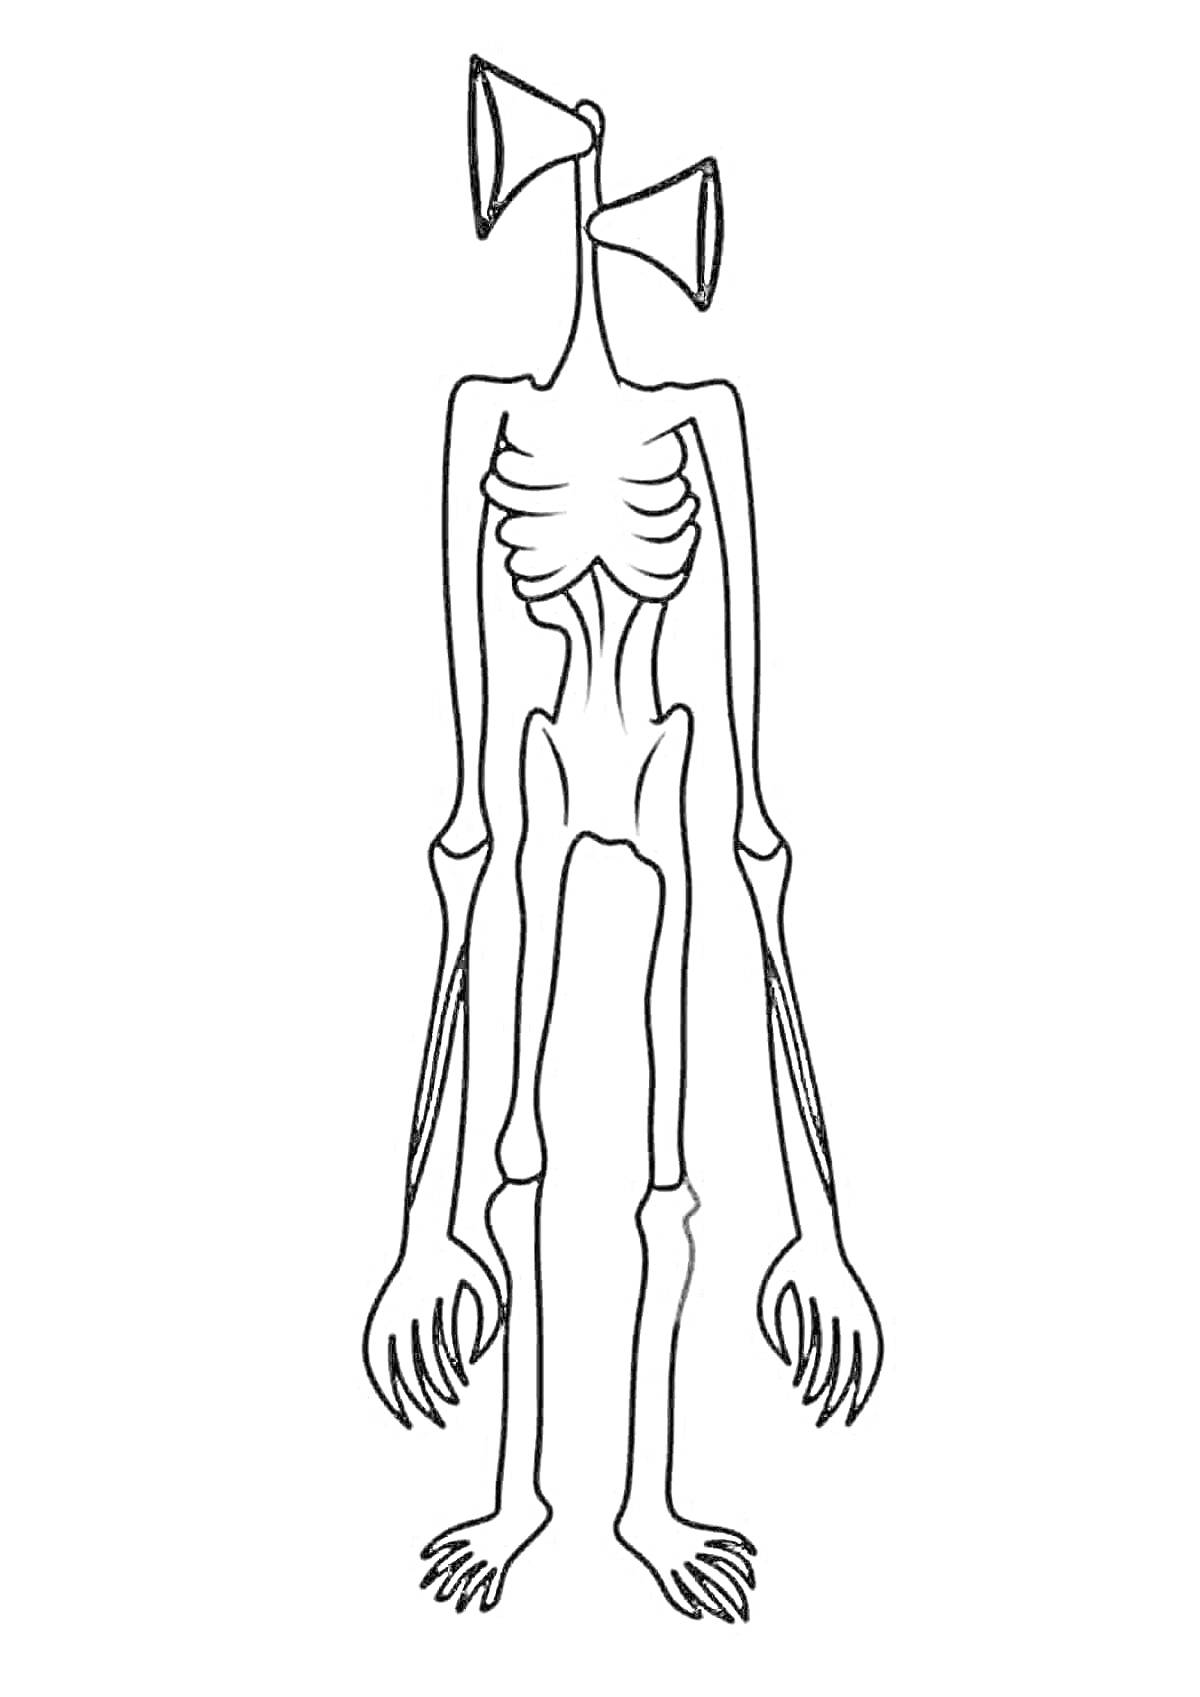 Раскраска Чёрно-белая раскраска Сиреноголового с сиренами вместо головы, туловищем, длинными руками, ребрами и когтистыми ногами